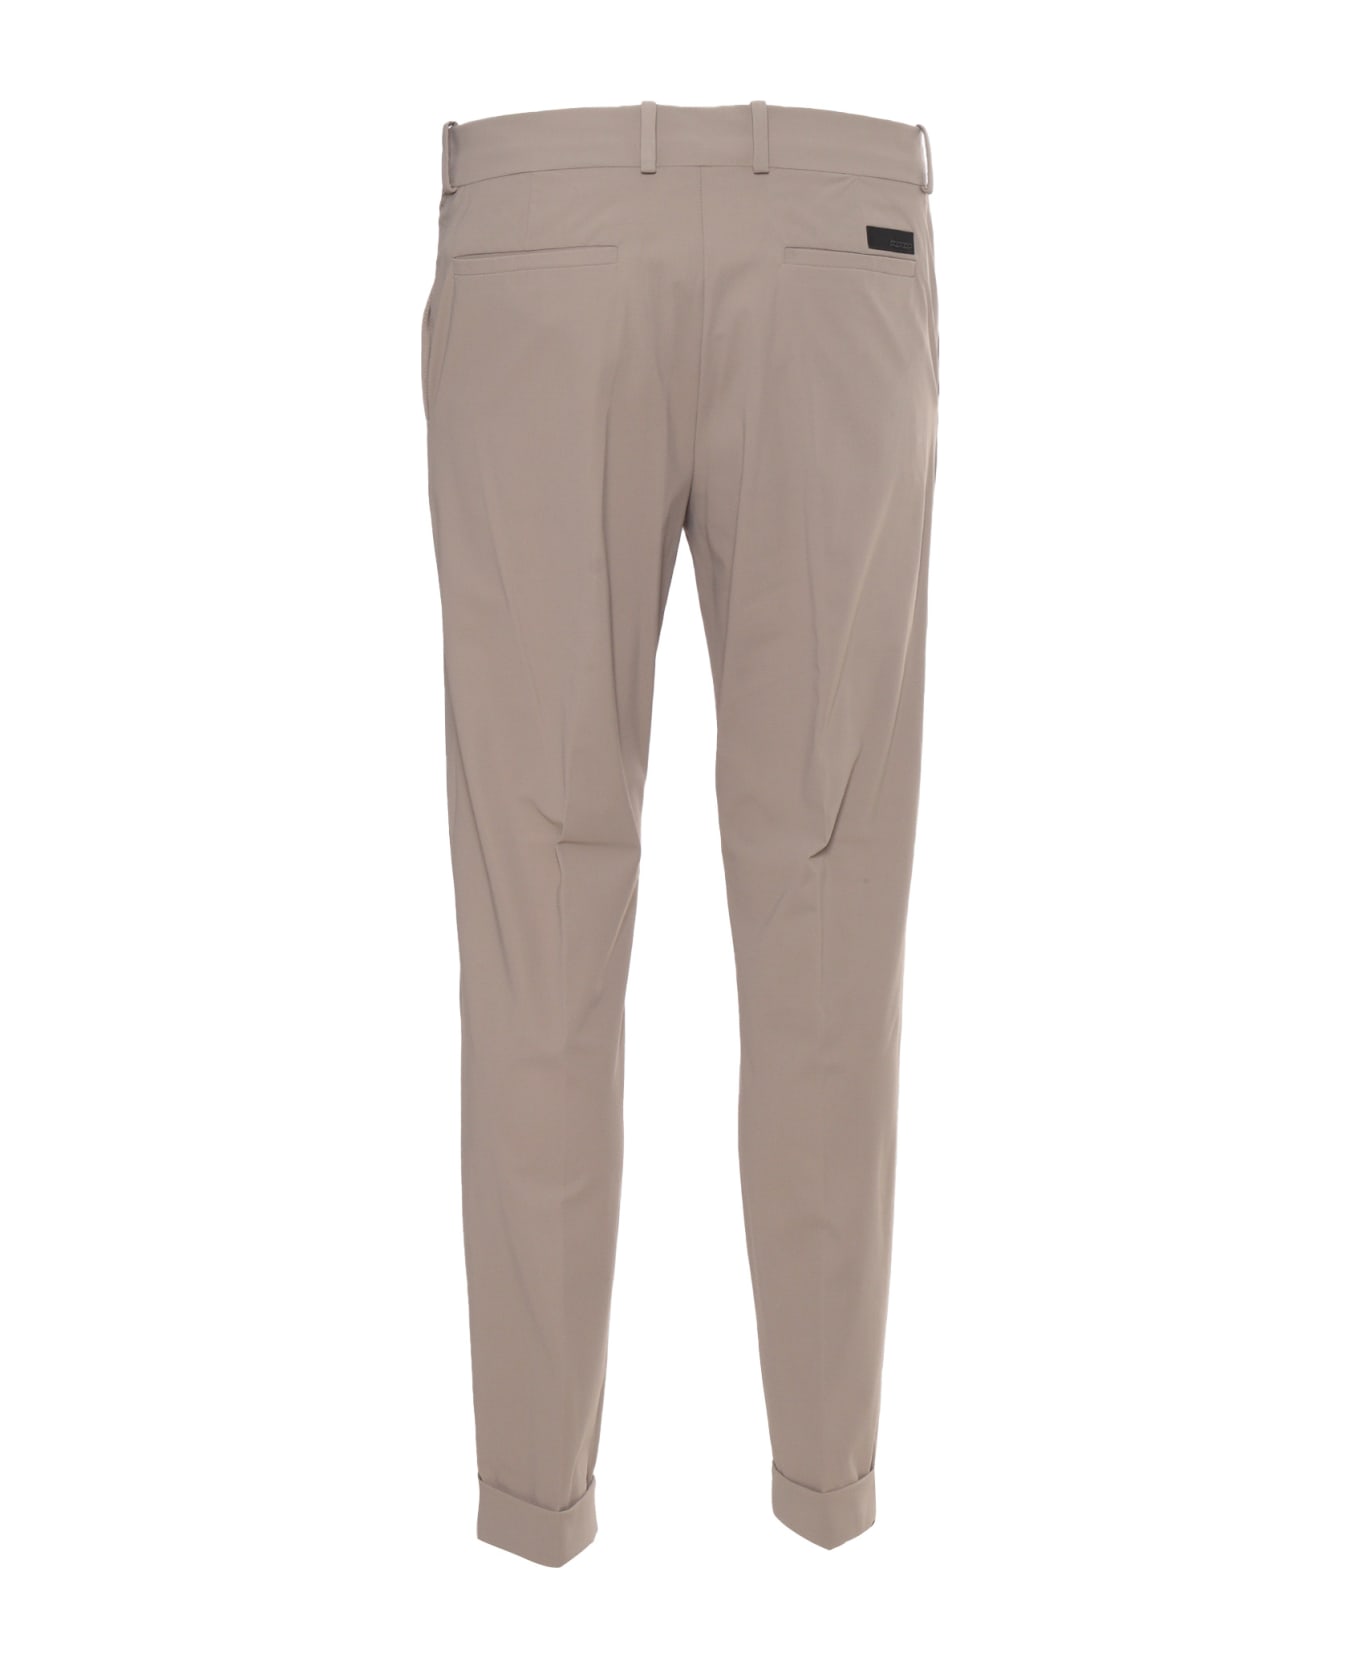 RRD - Roberto Ricci Design Beige Chino Trousers - GREY